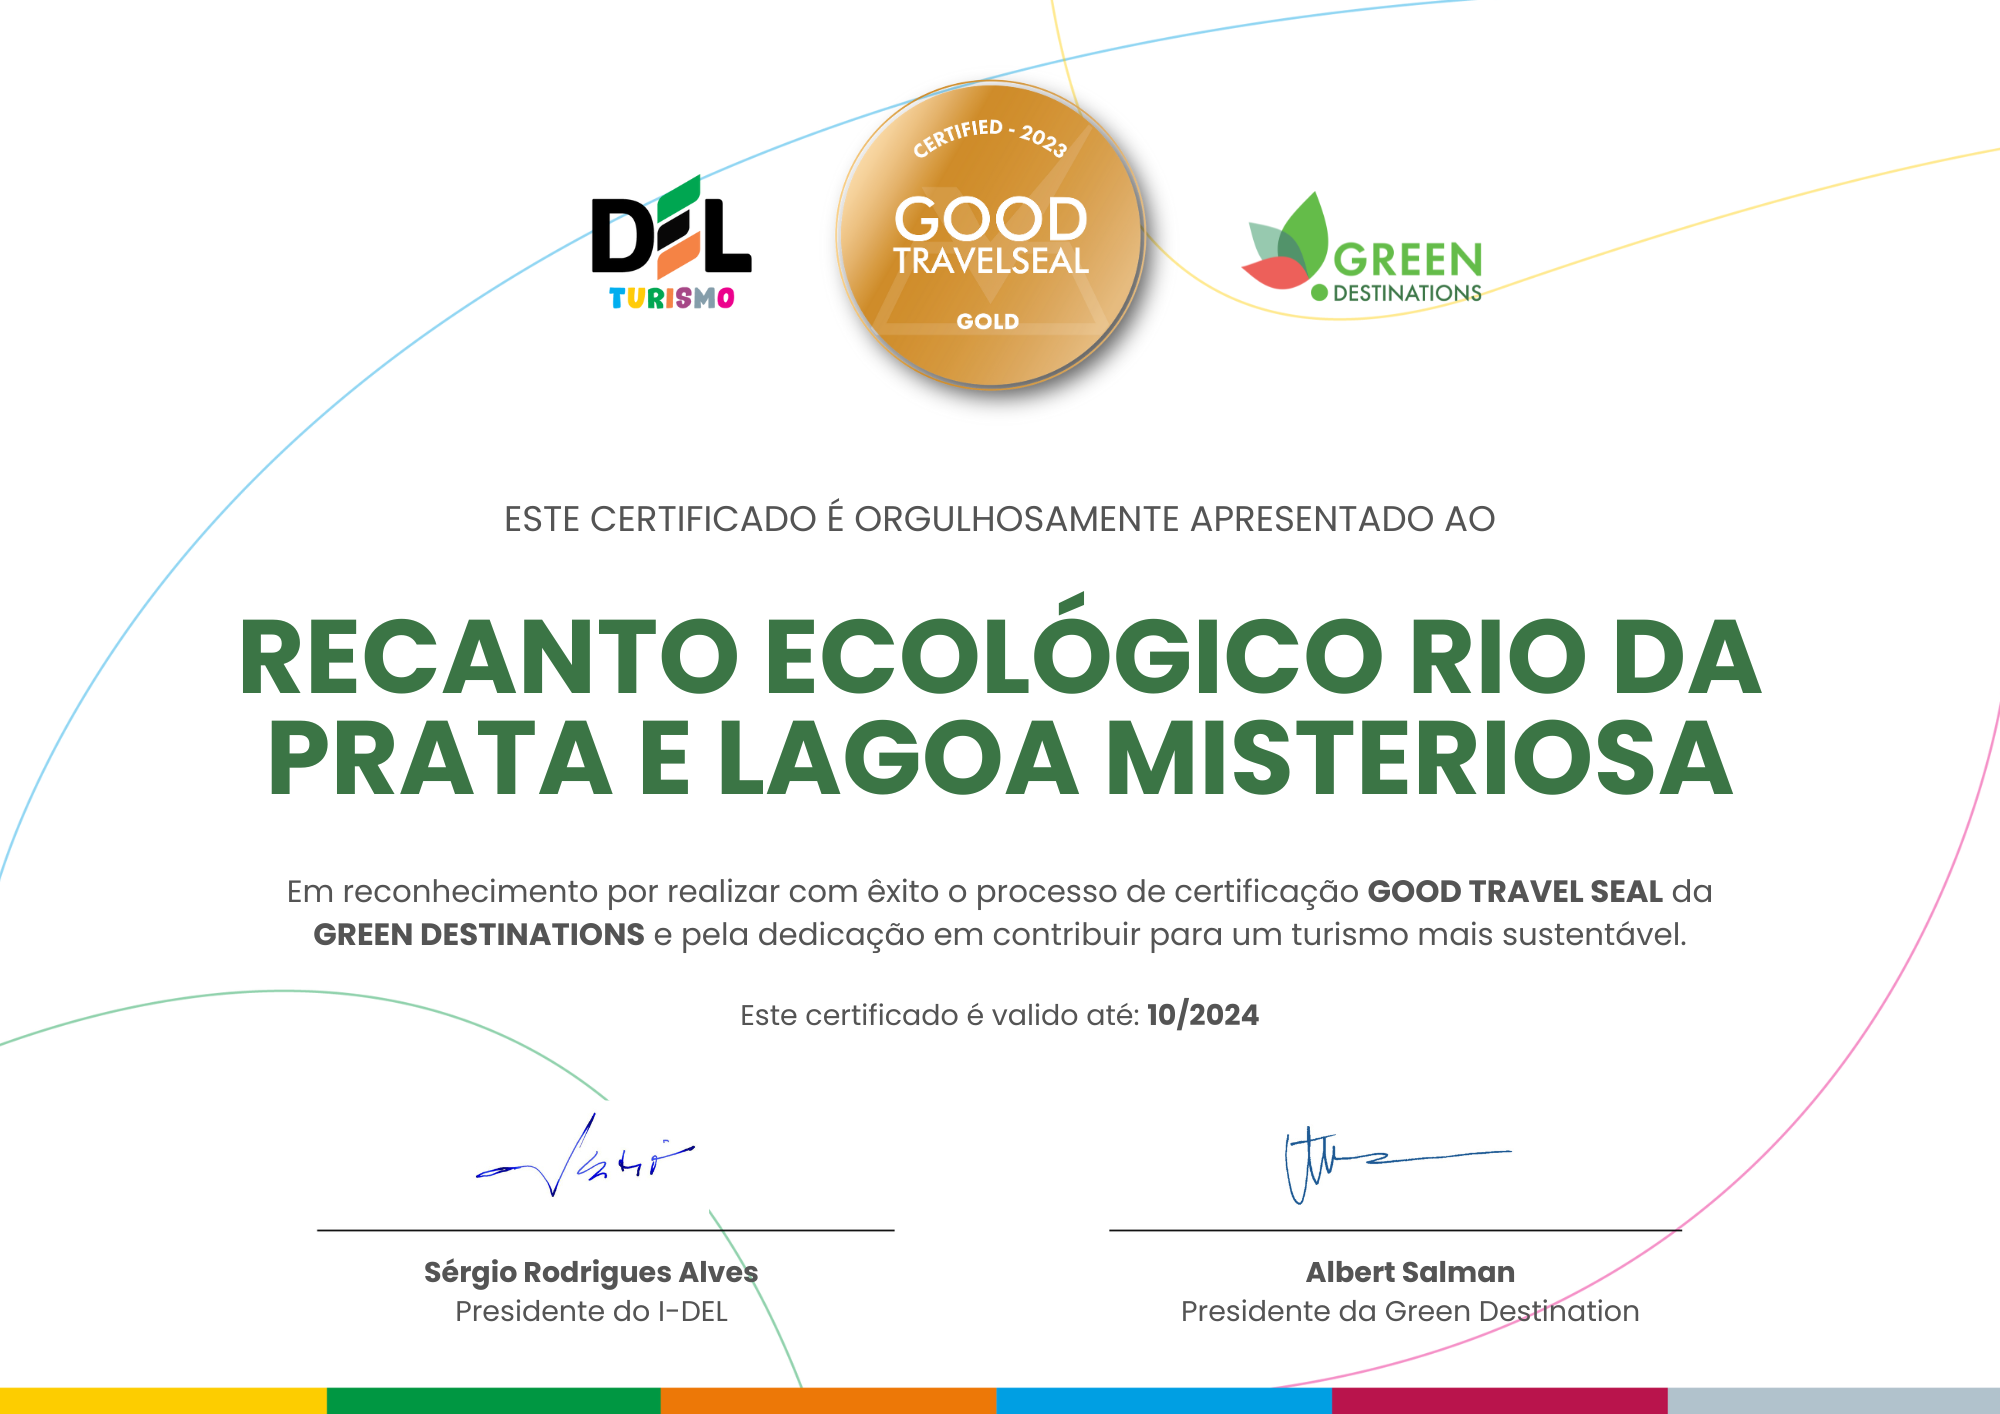 Lagoa Misteriosa e Recanto Ecológico Rio da Prata recebem Certificação Ouro de empreendimento turístico sustentável